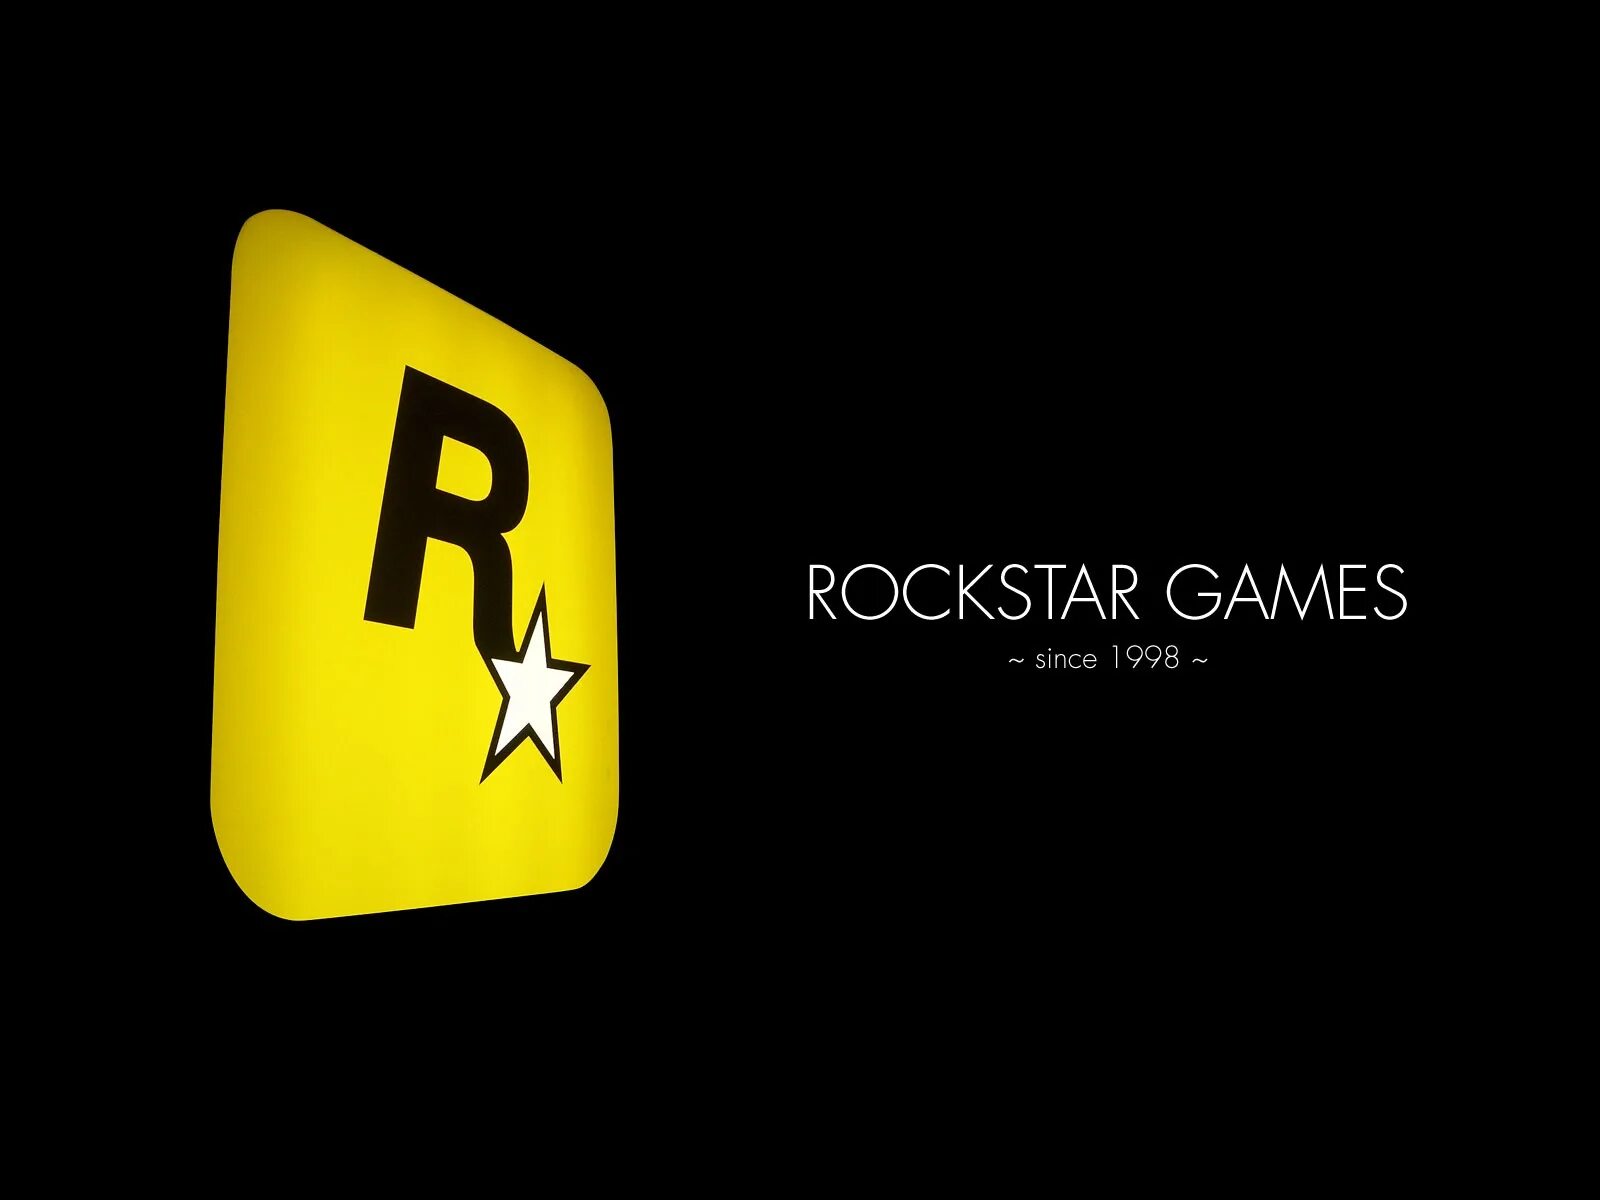 Rockstar games. Логотип рокстар. Rooster game. Игры Rockstar. Rockstar games вход